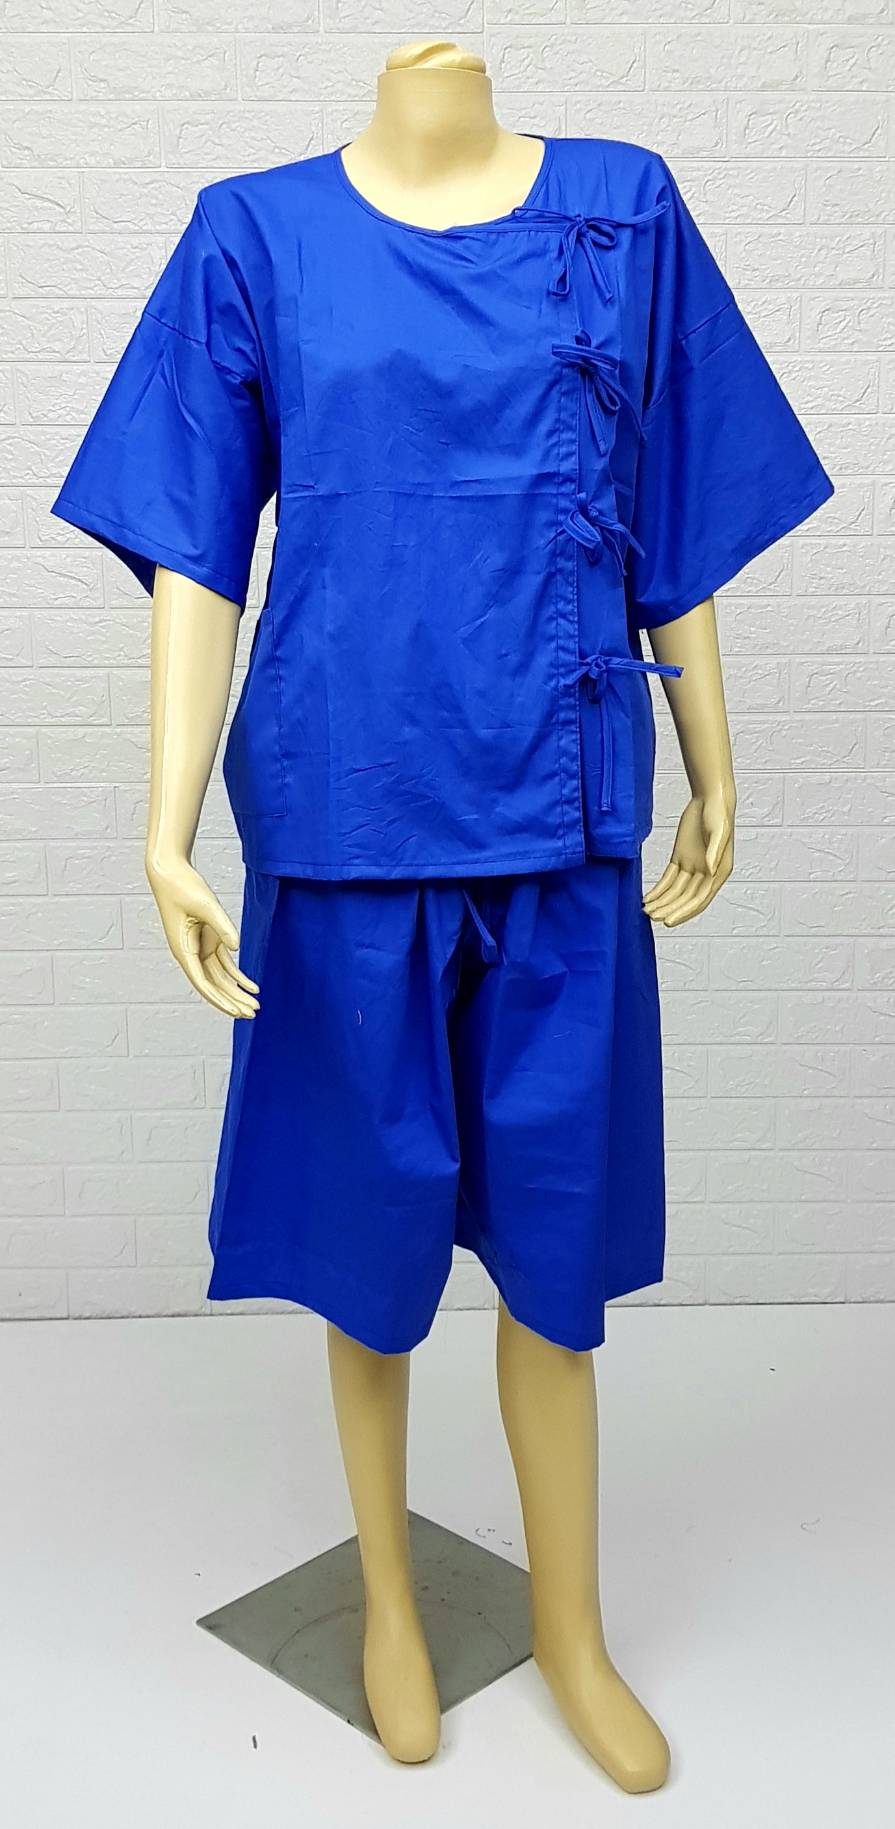  ชุดเสื้อกางเกงสำหรับผู้ป่วย เสื้อคอกลม พร้อมกางเกงหูรูดขายาว  ผ้าฝ้าย 100%  MADE IN THAILAND  ผู้ป่วยติดเตียง   ผู้ป่วยพักฟื้นหลังผ่าตัด  